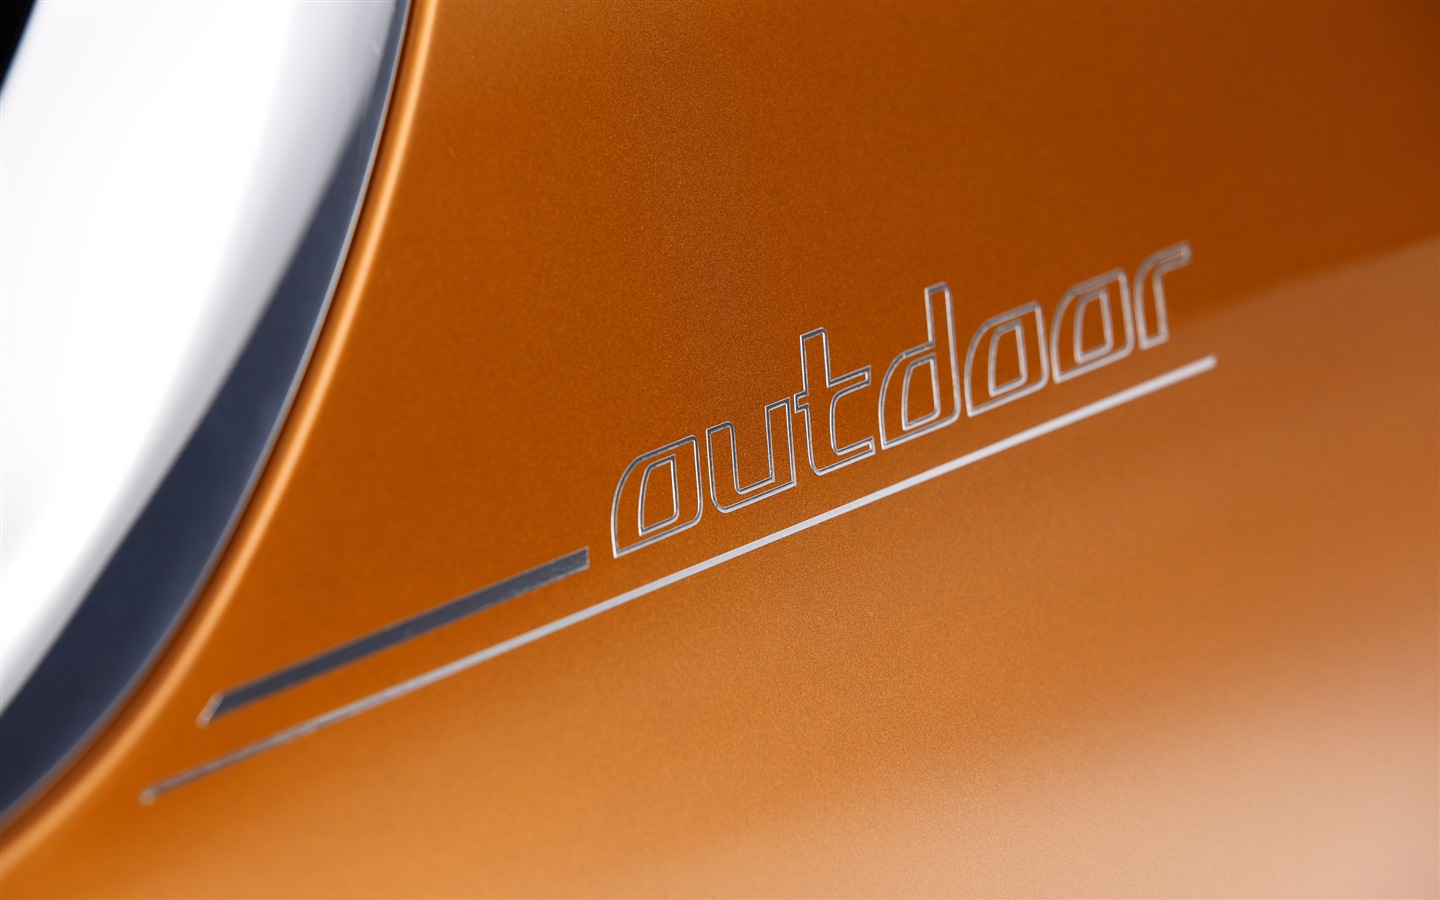 2013 BMW Concept Active Tourer 宝马旅行车 高清壁纸17 - 1440x900